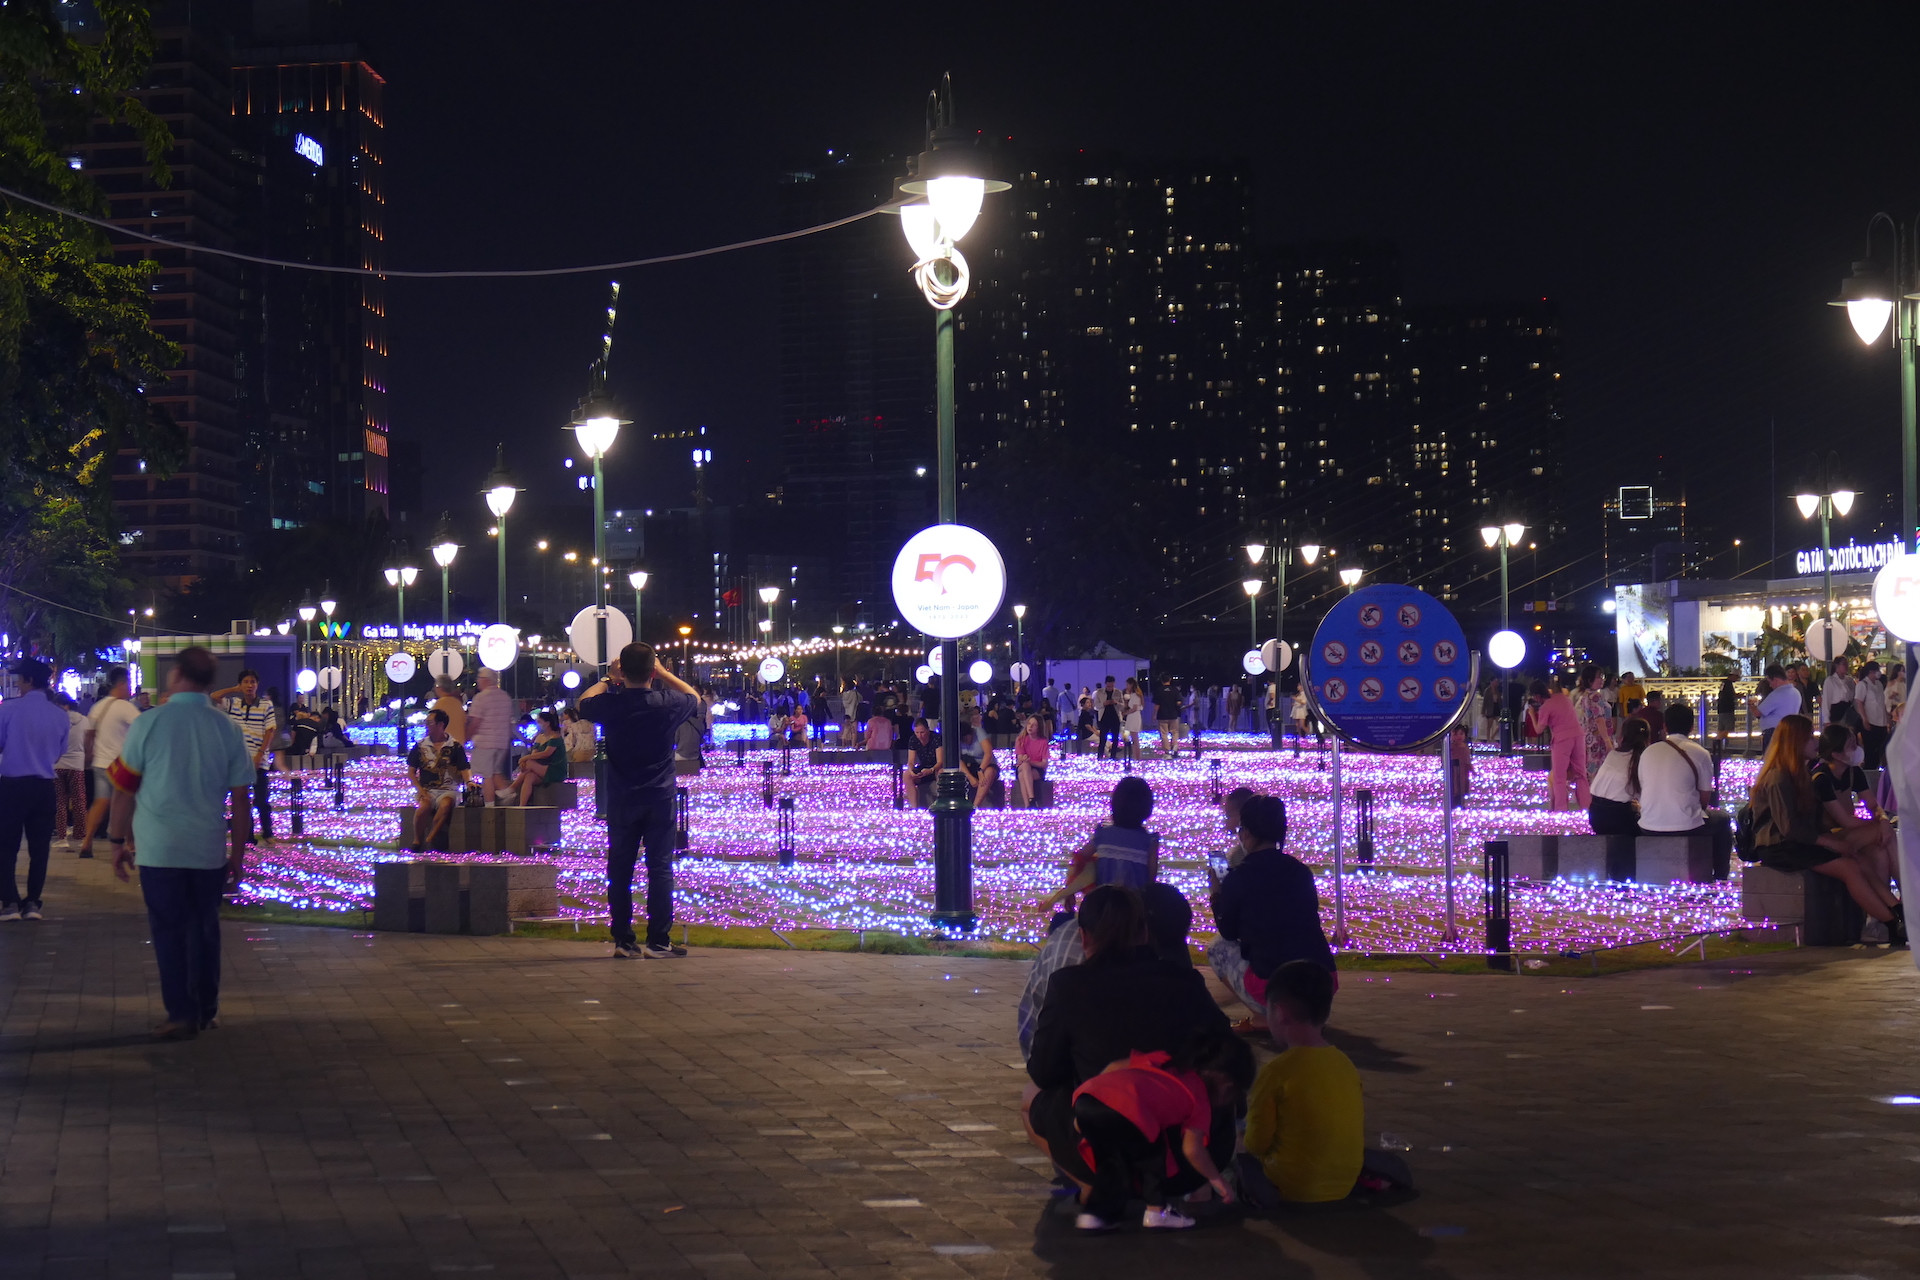  Ấn tượng với hoạt động trang trí đèn nghệ thuật kỷ niệm 50 năm quan hệ Việt – Nhật